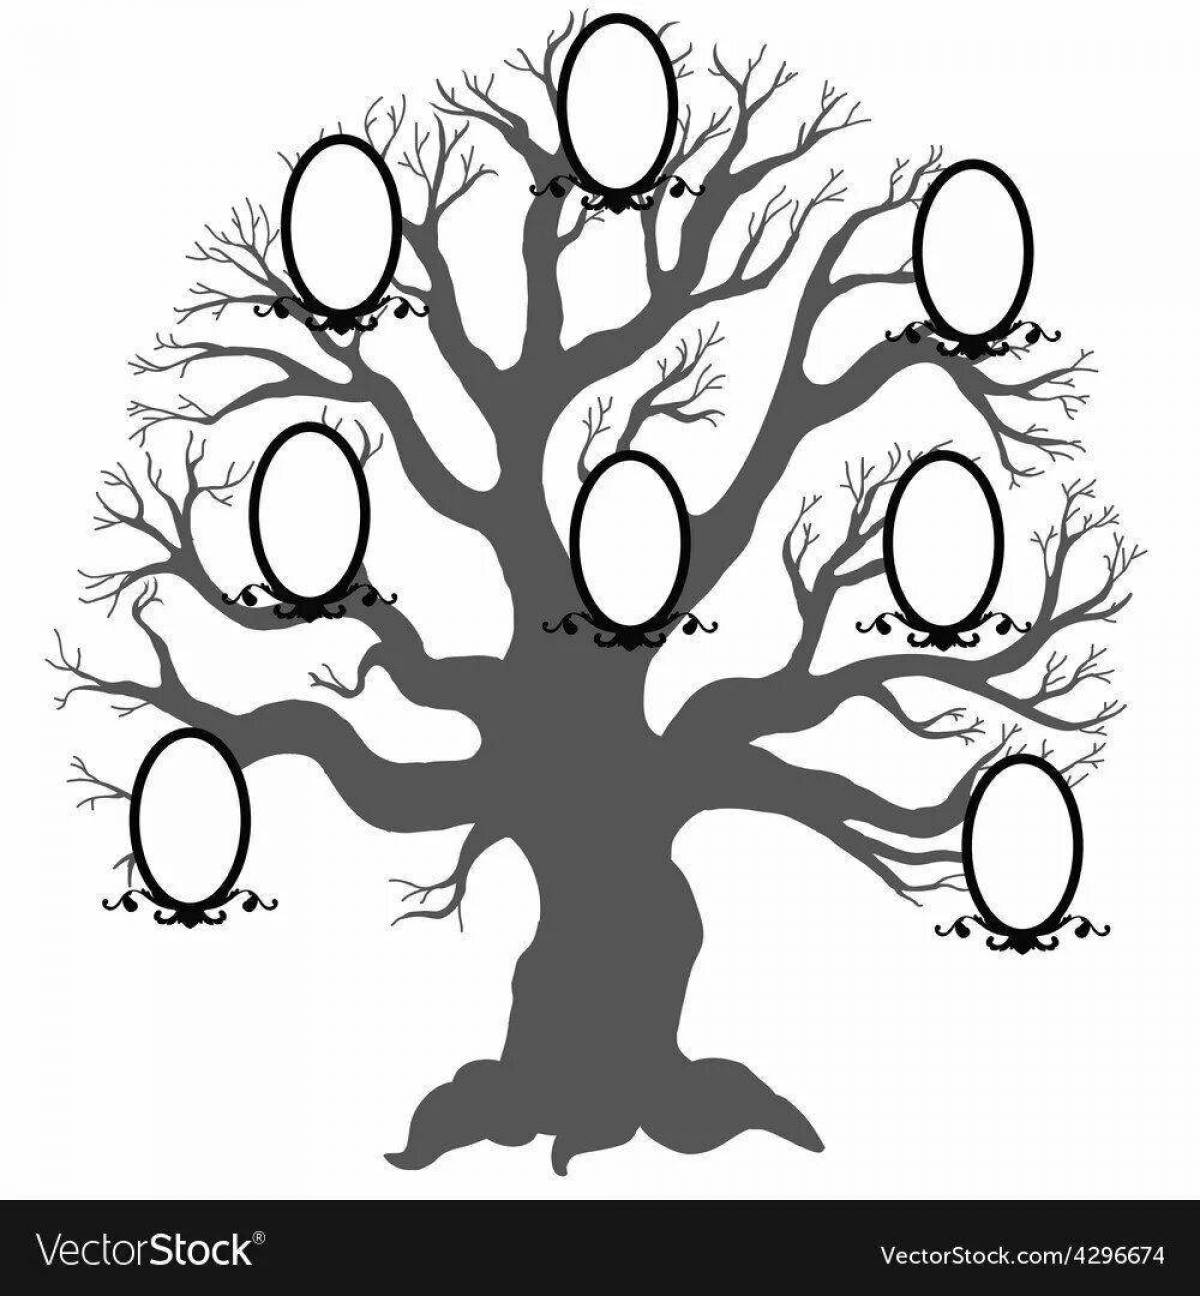 Amazing family tree design